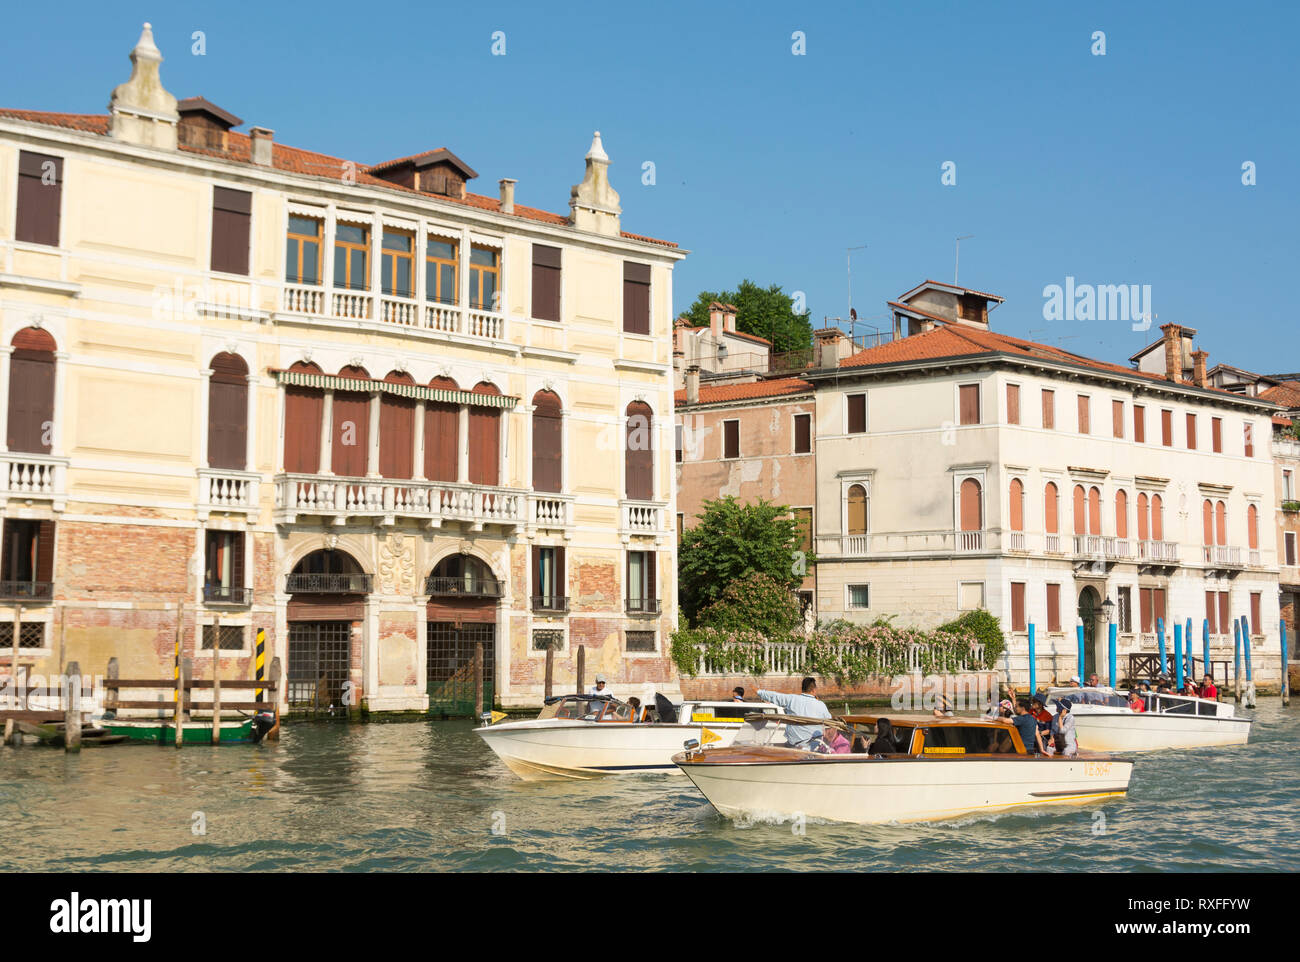 Les taxis de l'eau dans le Grand Canal, Venise, Italie Banque D'Images